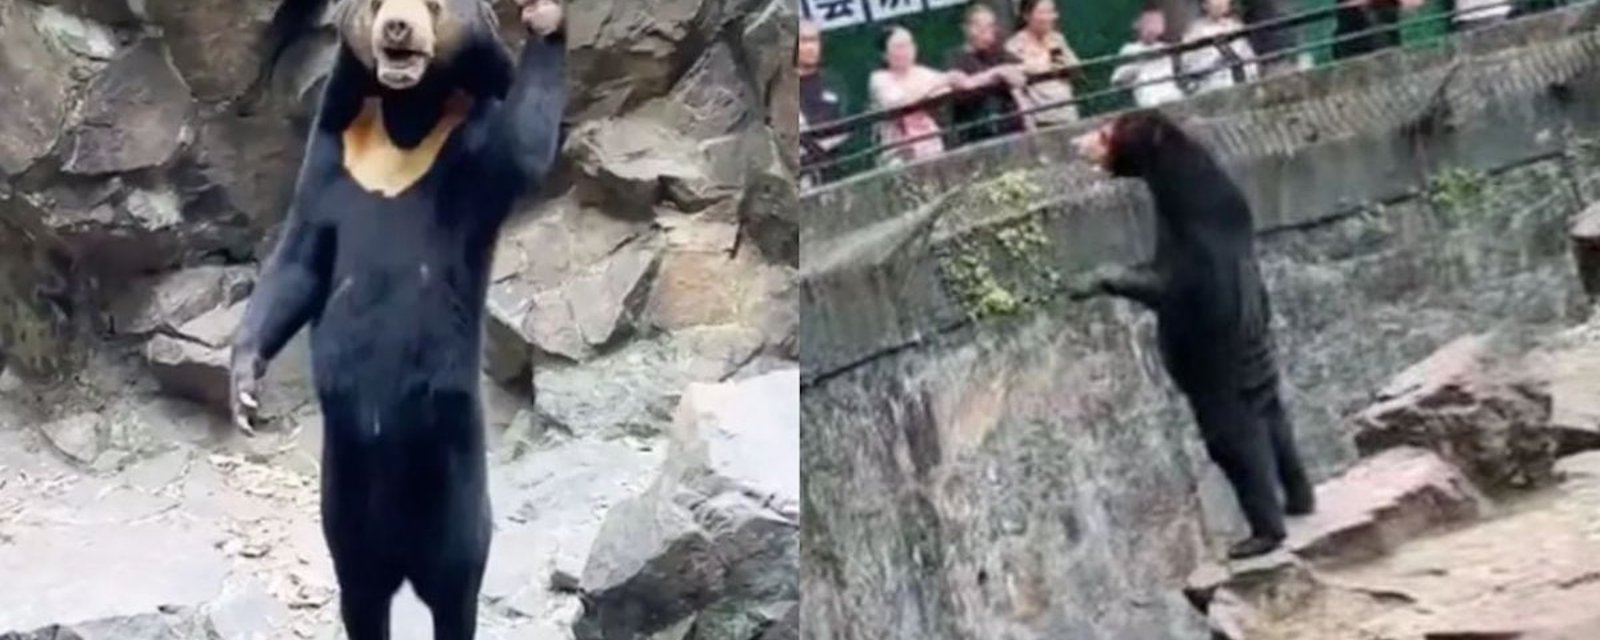 La vidéo et la photo d’un ours dans un zoo sèment la confusion chez les internautes